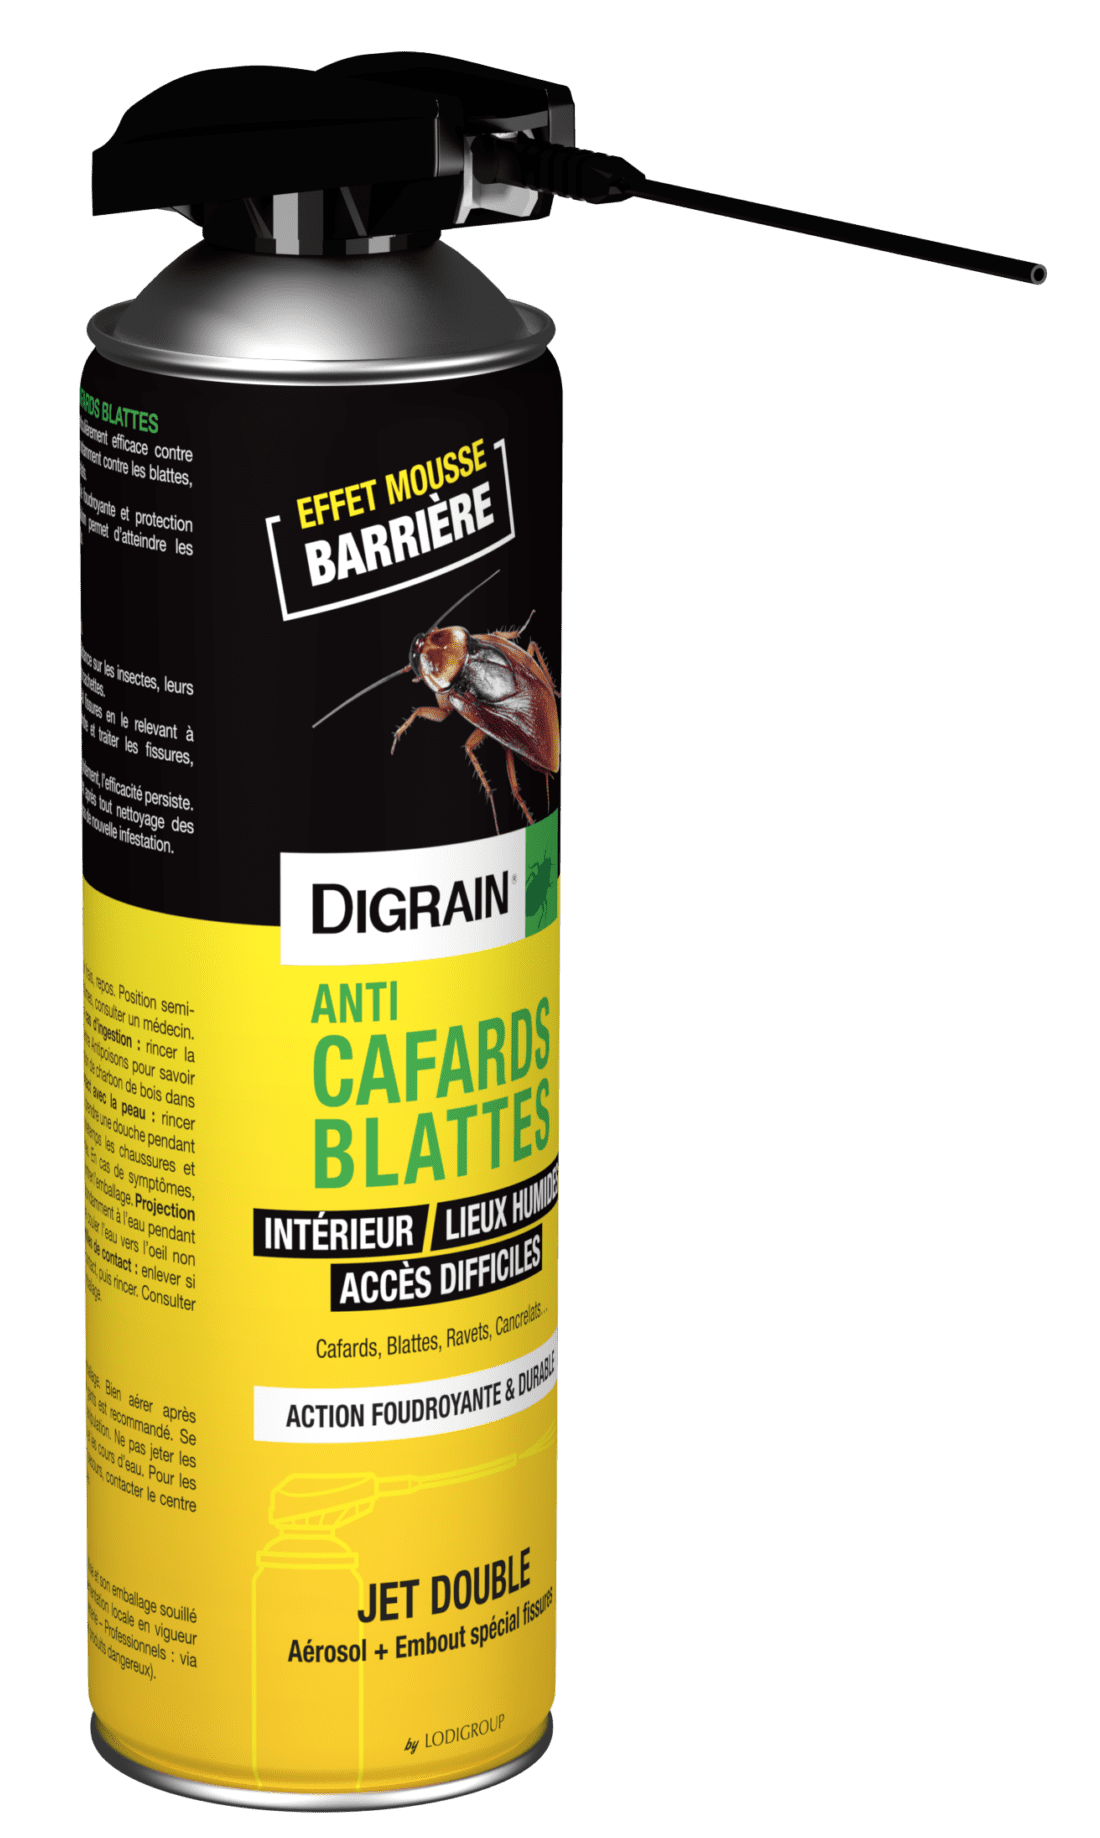 Nouveau produit anti-cafards anti-blattes: La Qualité et le prix